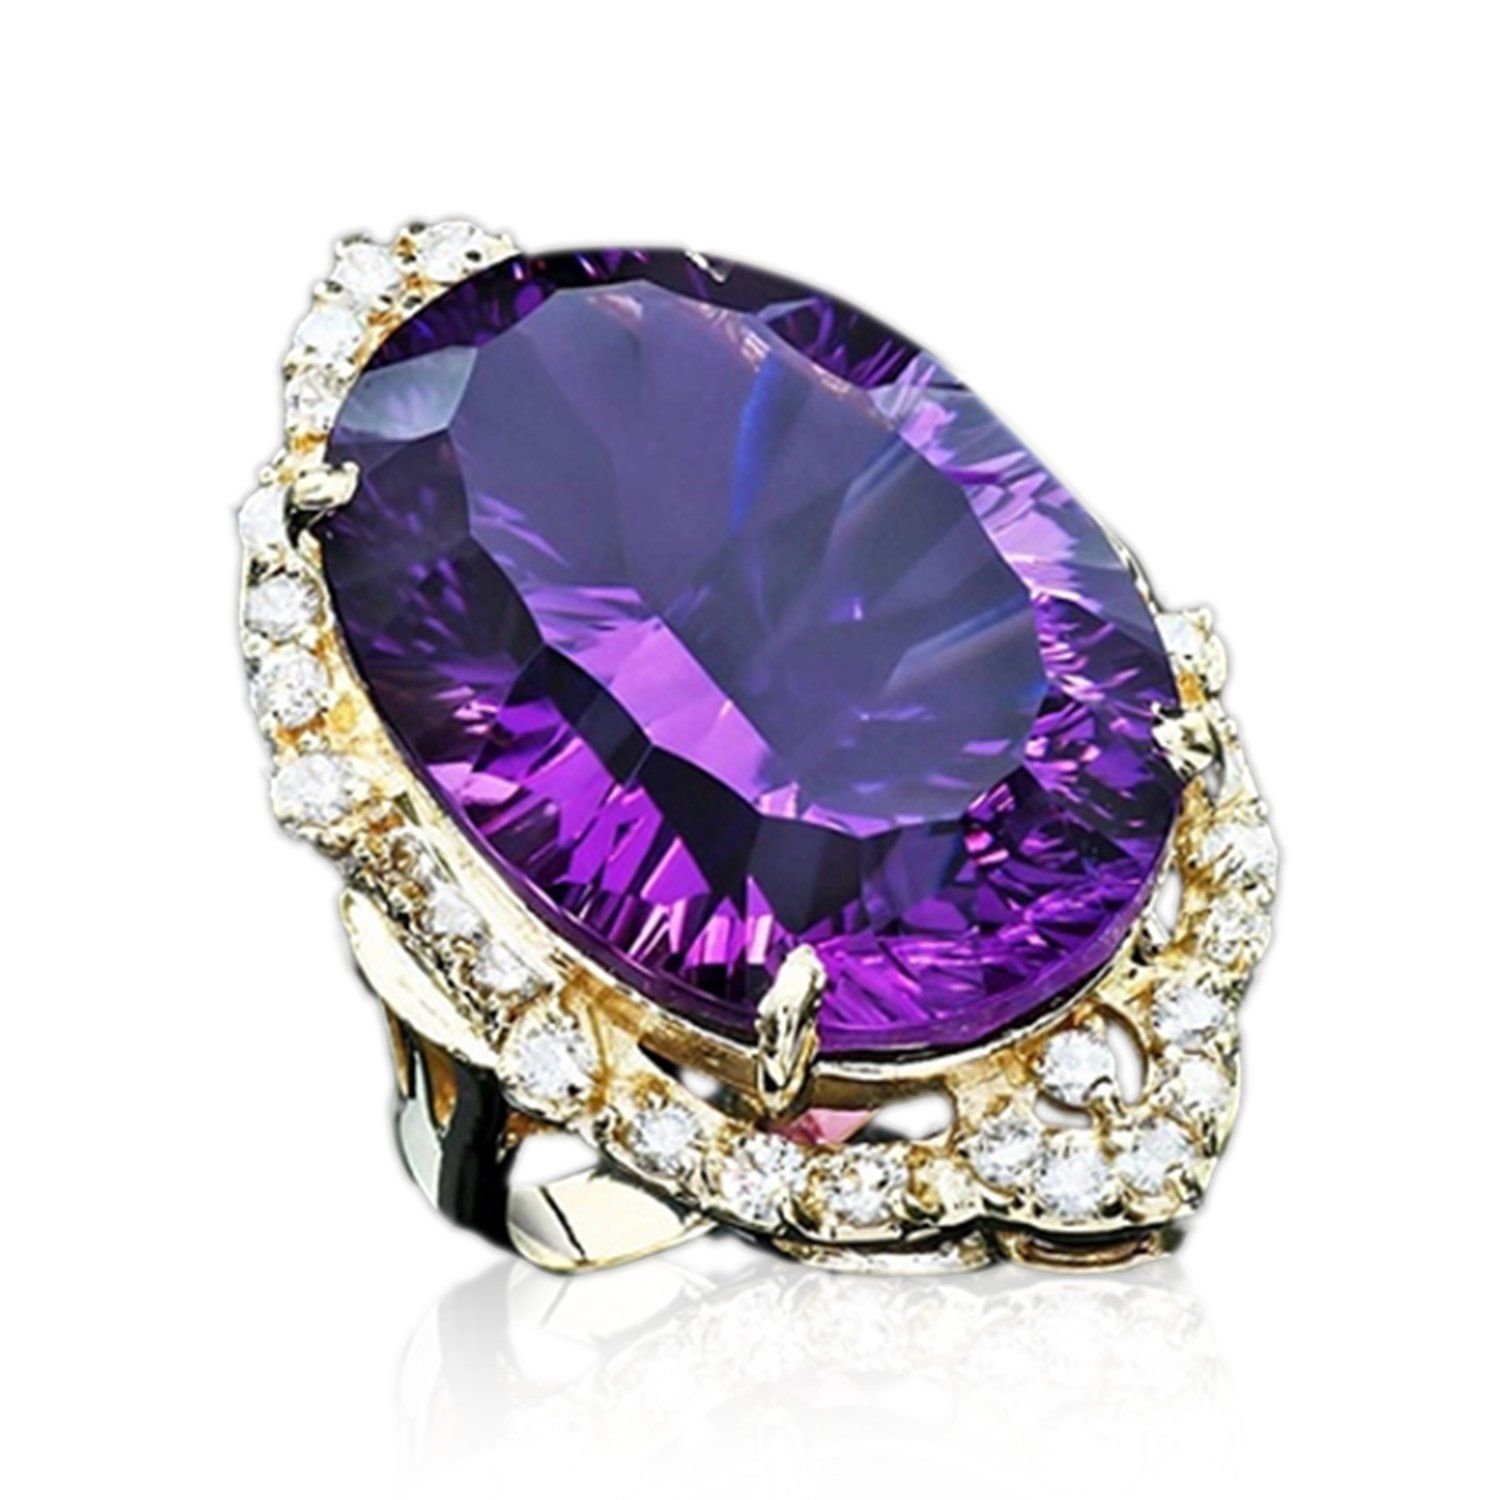 Дорога аметист. Аметист и фиолетовый сапфир. Фиолетовый сапфир камень. Аметист камень в ювелирных изделиях. Кольцо с фиолетовым камнем.